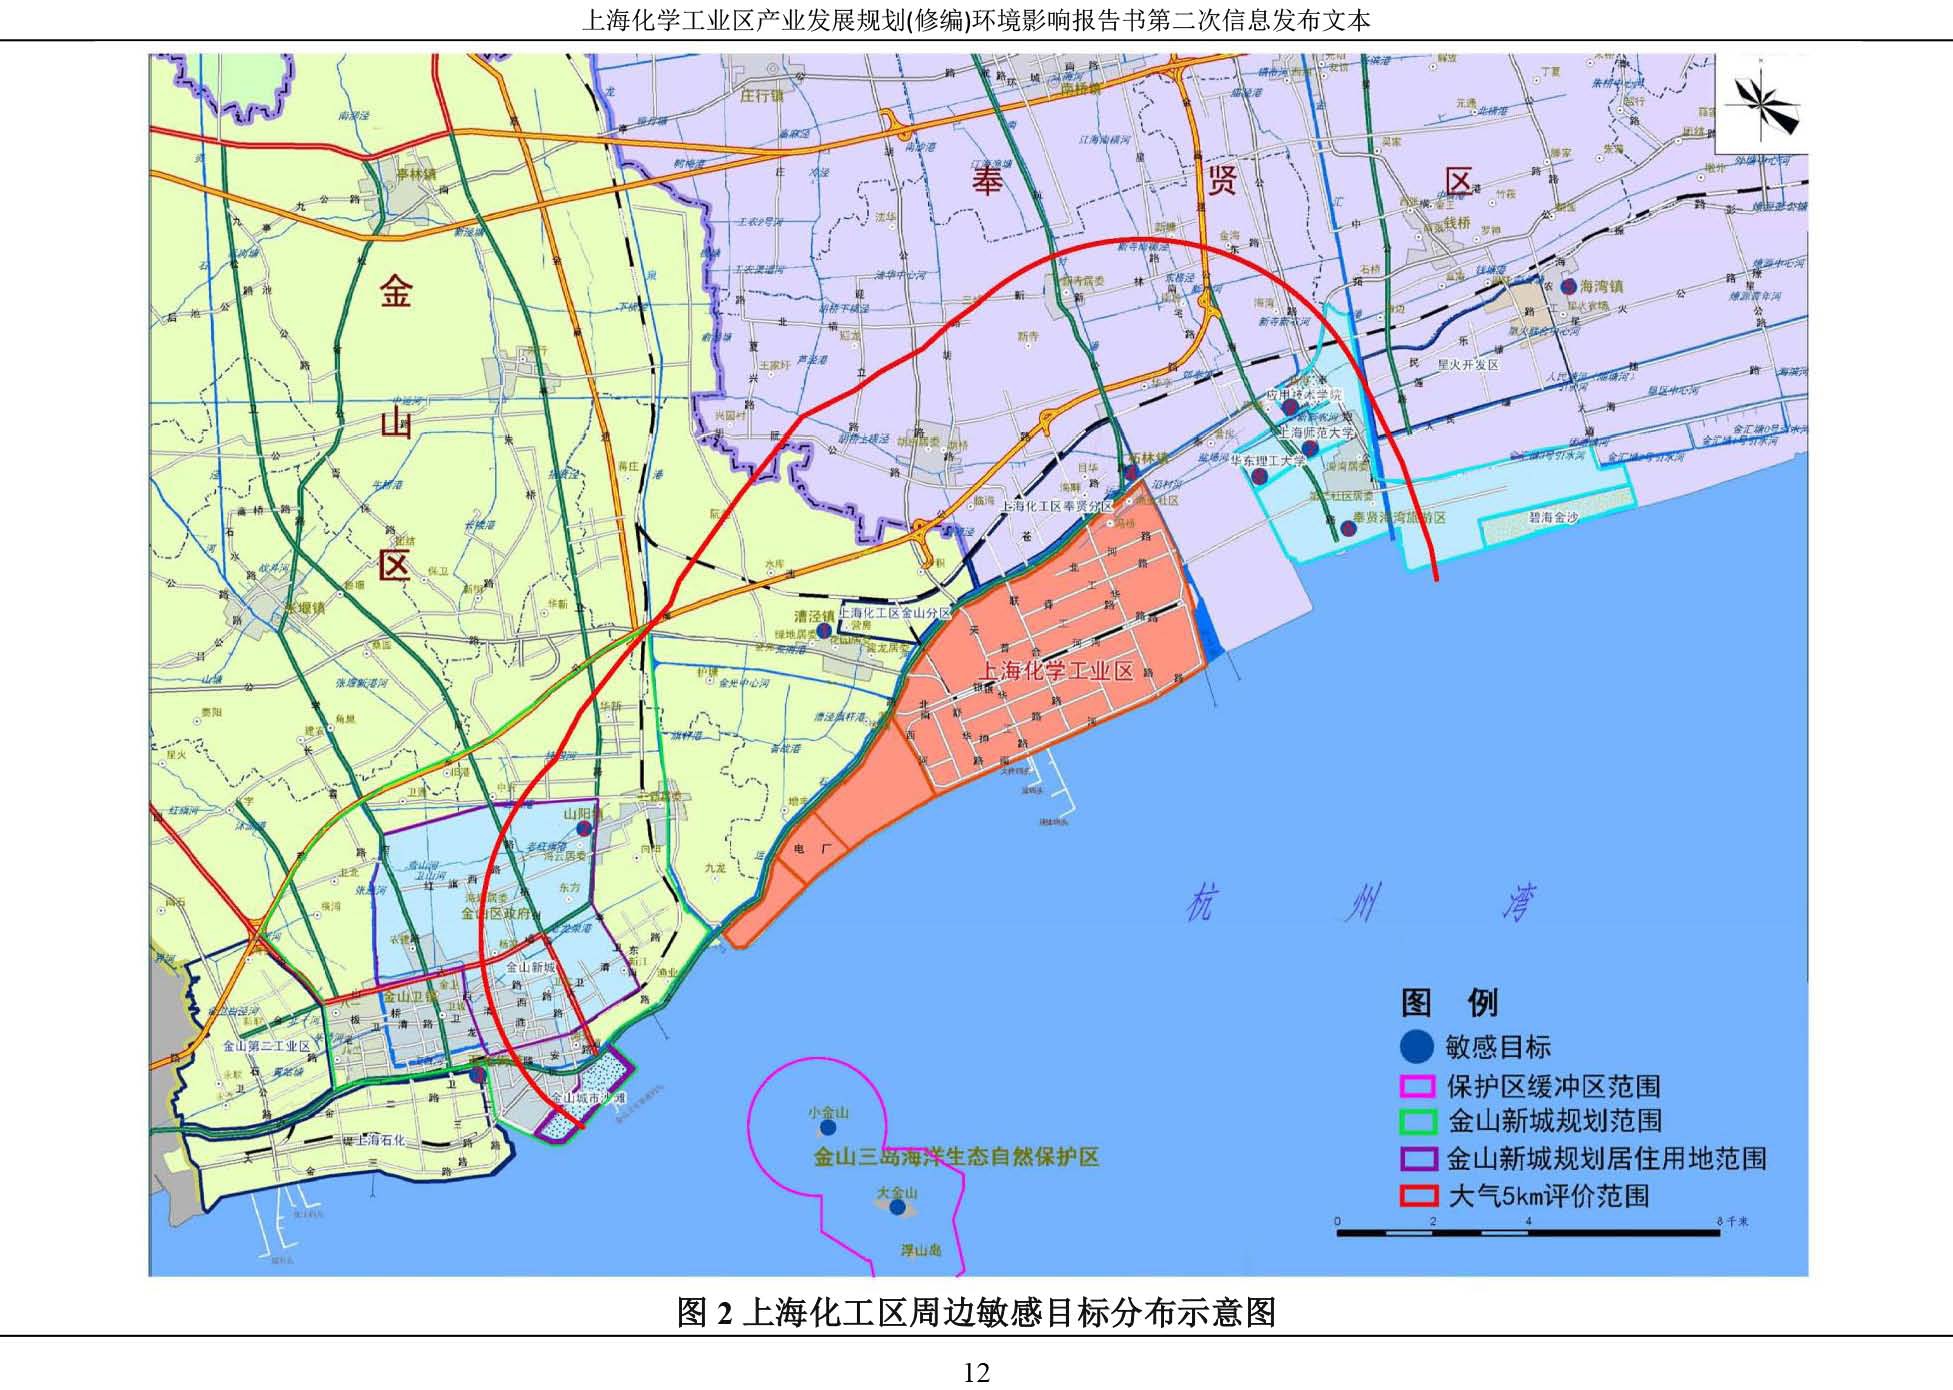 上海市政府要求终止化工区规划环评工作-中国